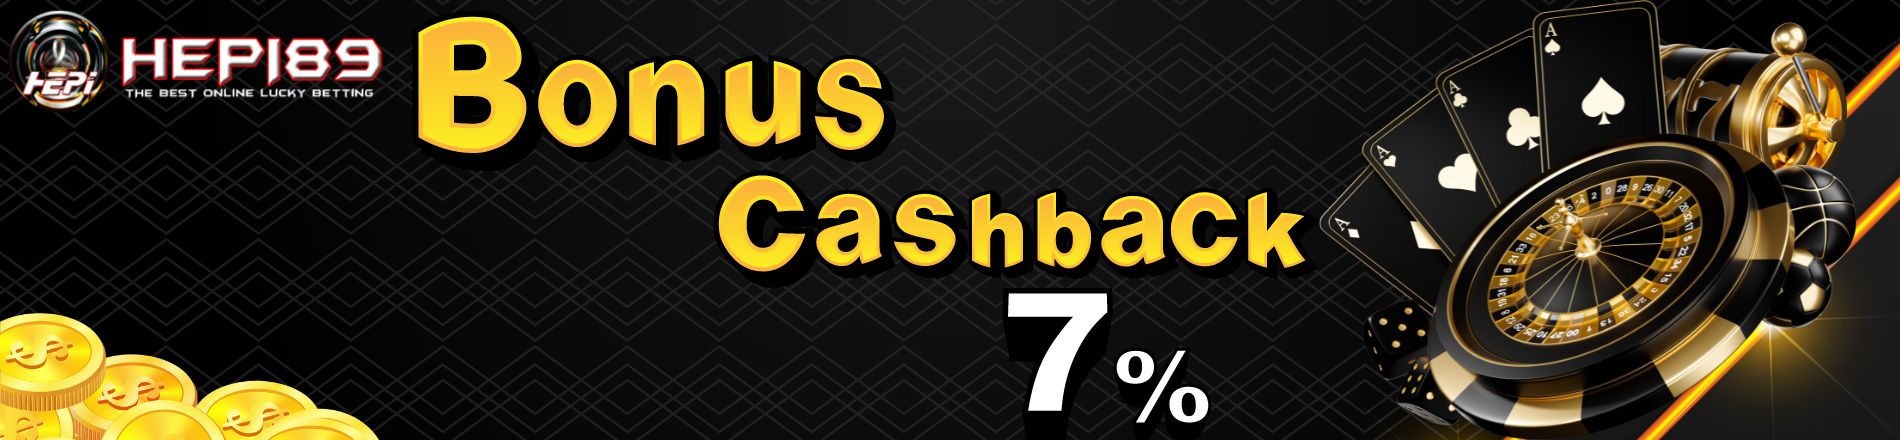 BONUS CASHBACK 7%